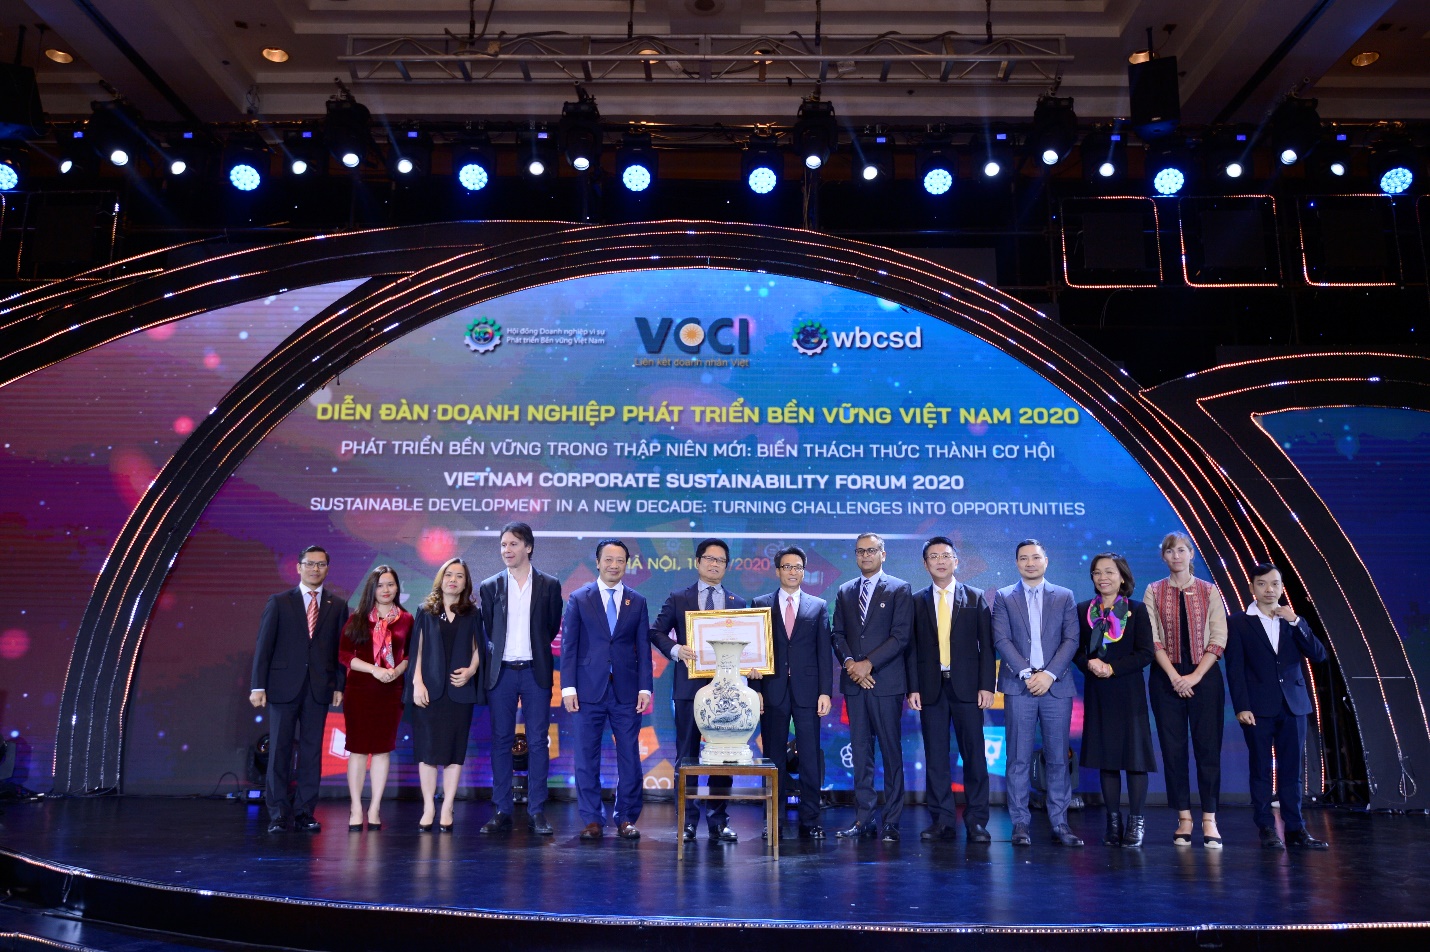 Đại diện Unilever (thứ tư từ phải sang) - Ông Đỗ Thái Vương - đồng thời là Phó Chủ tịch Ban thường trực Hội đồng Doanh nghiệp vì sự Phát triển bền vững Việt Nam<p/>(VBCSD) cùng các đơn vị đón nhận Bằng khen của Thủ tướng cho VBCSD